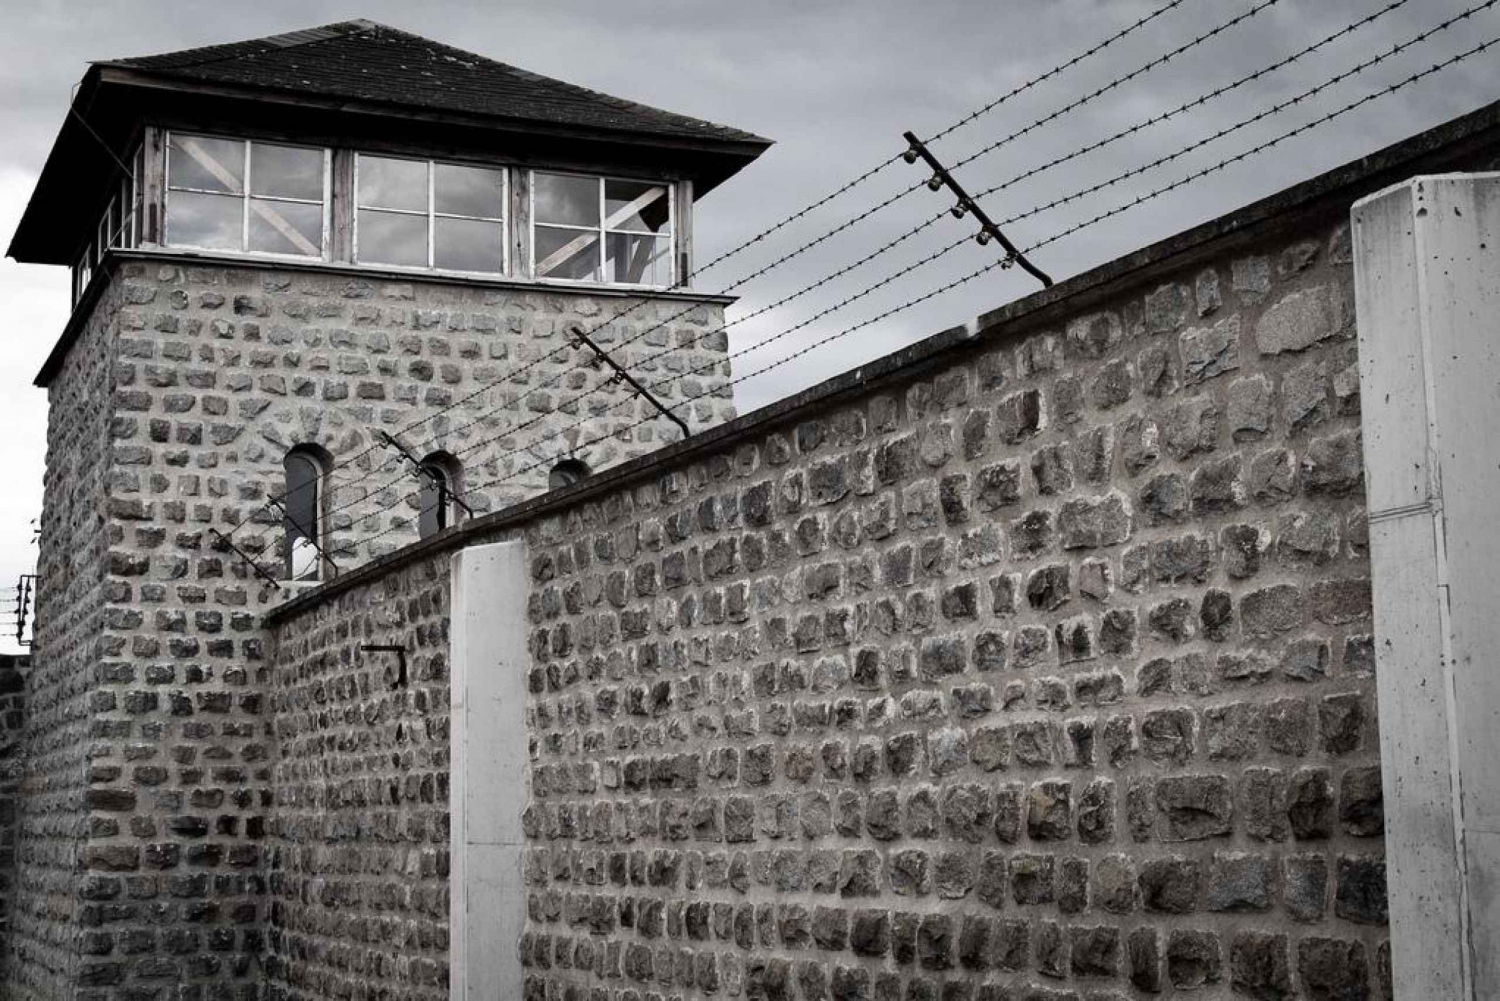 Wien: Dagsutflykt till minnesmärket över koncentrationslägret Mauthausen